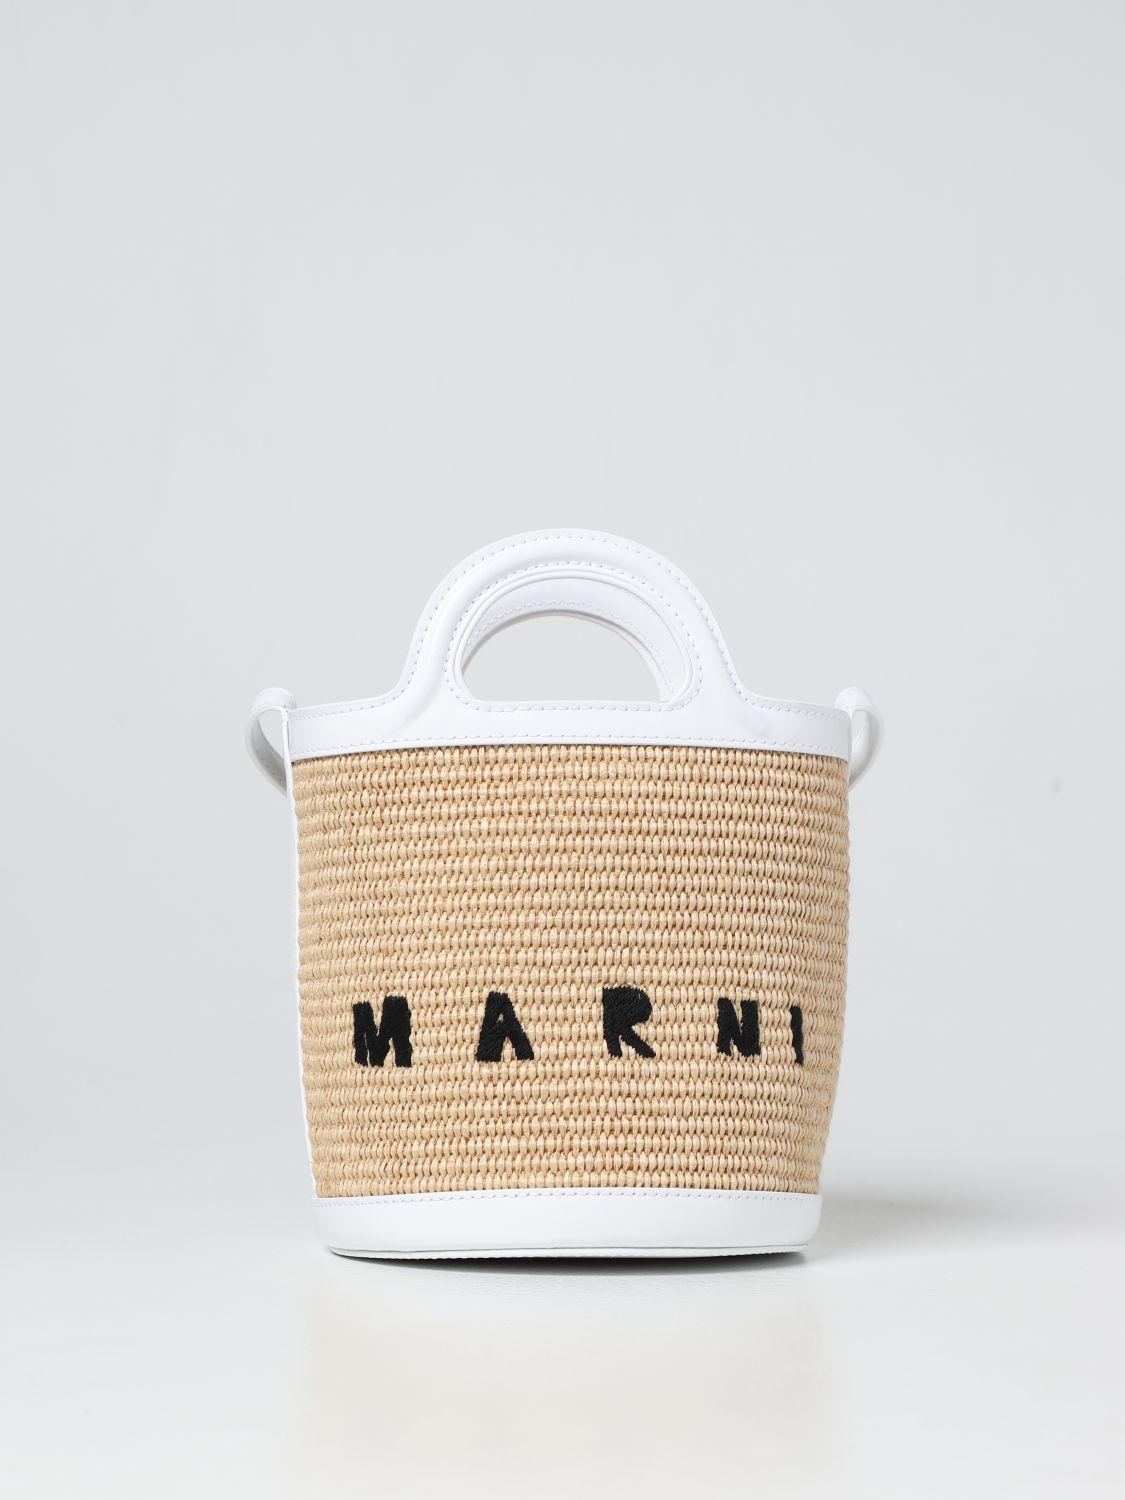 MARNI: Tropicalia raffia and leather bag - White | Marni mini bag ...